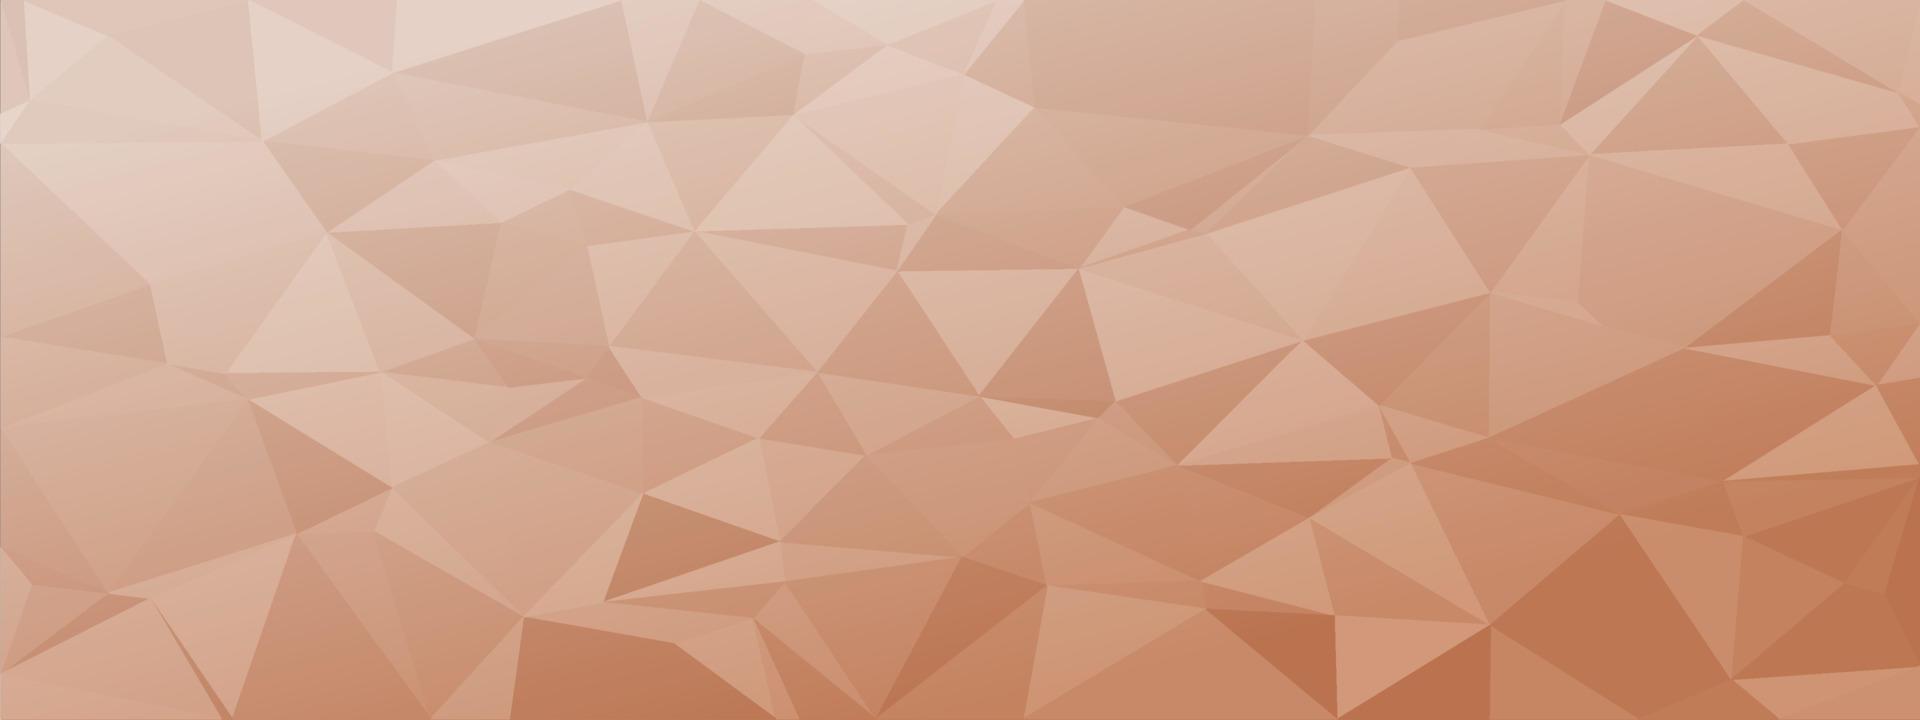 låg poly abstrakt modern bakgrund. känsliga färger kaotiska trianglar variabel storlek och rotation. minimalistisk layout för visitkorts målsida tapeter webbplats broschyr. trendig vektor eps10